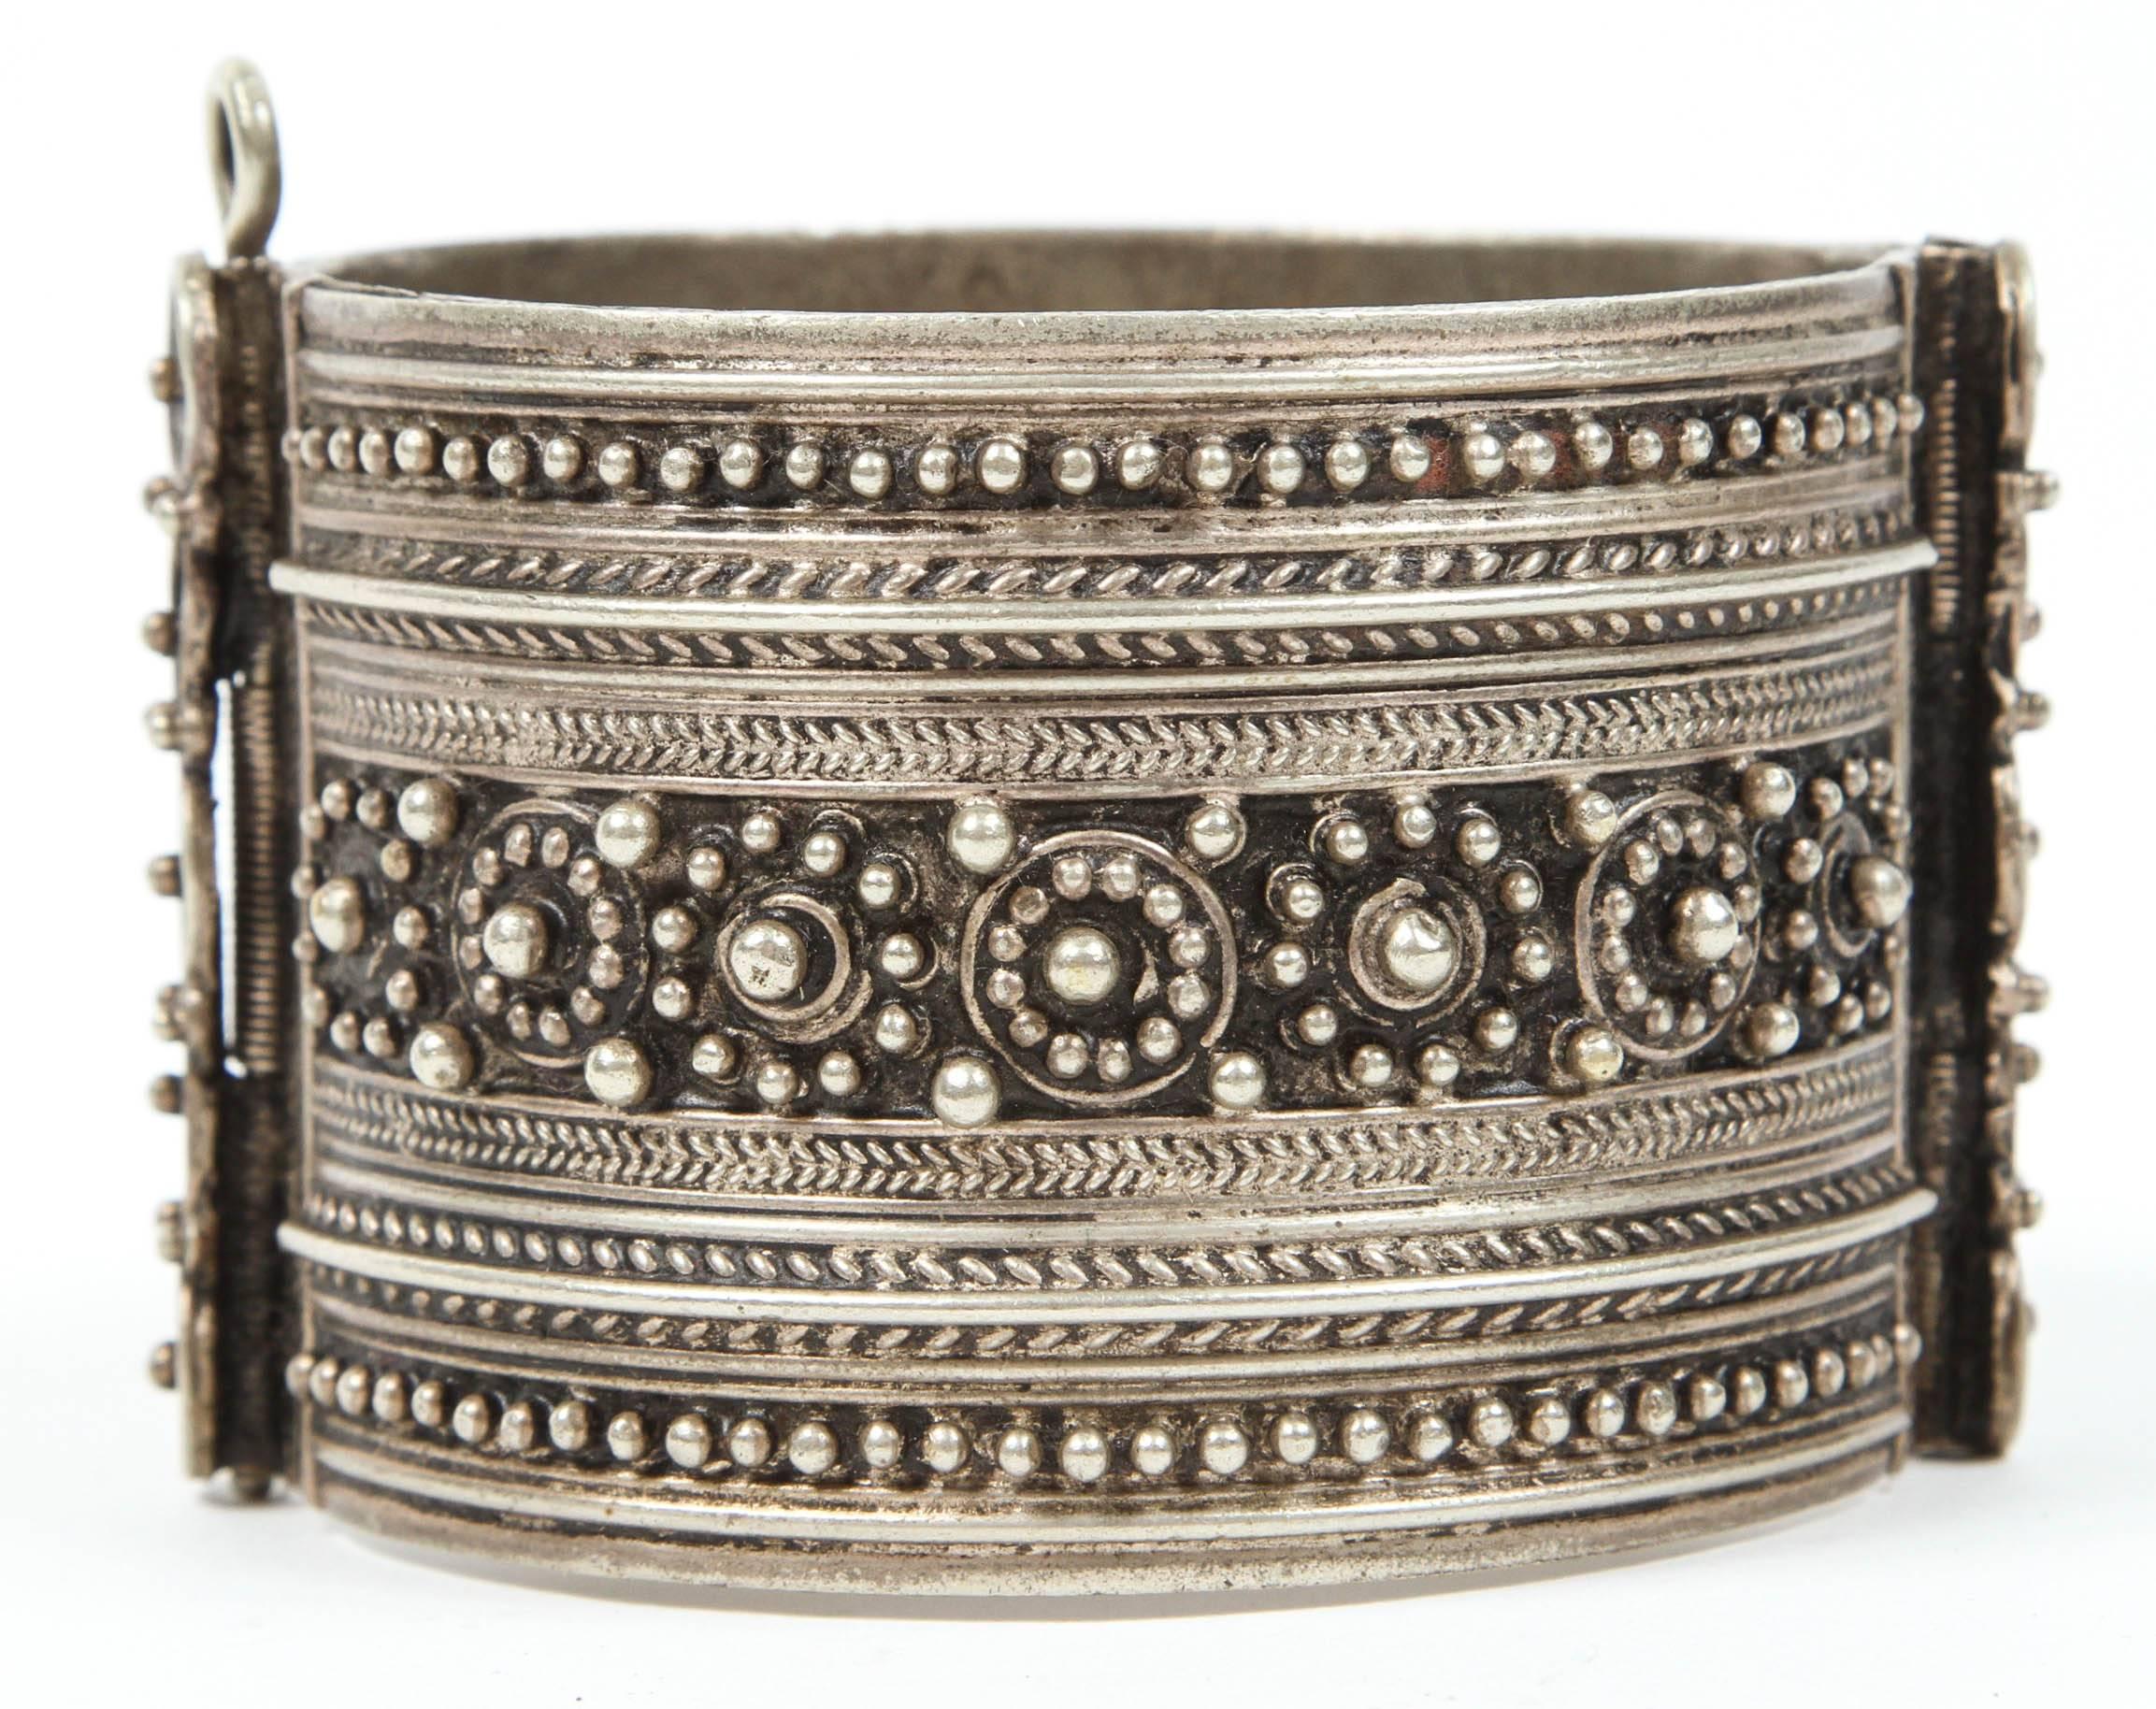 Vintage marokkanischen Berber Stammes-Armband marokkanischen Stammes-Armband aus dem Hohen Atlas von Marokko. Handgefertigt von Berberfrauen aus marokkanischem Neusilber. Der ethnische Nomaden- und Beduinenschmuck aus dem Maghreb und Nordafrika ist